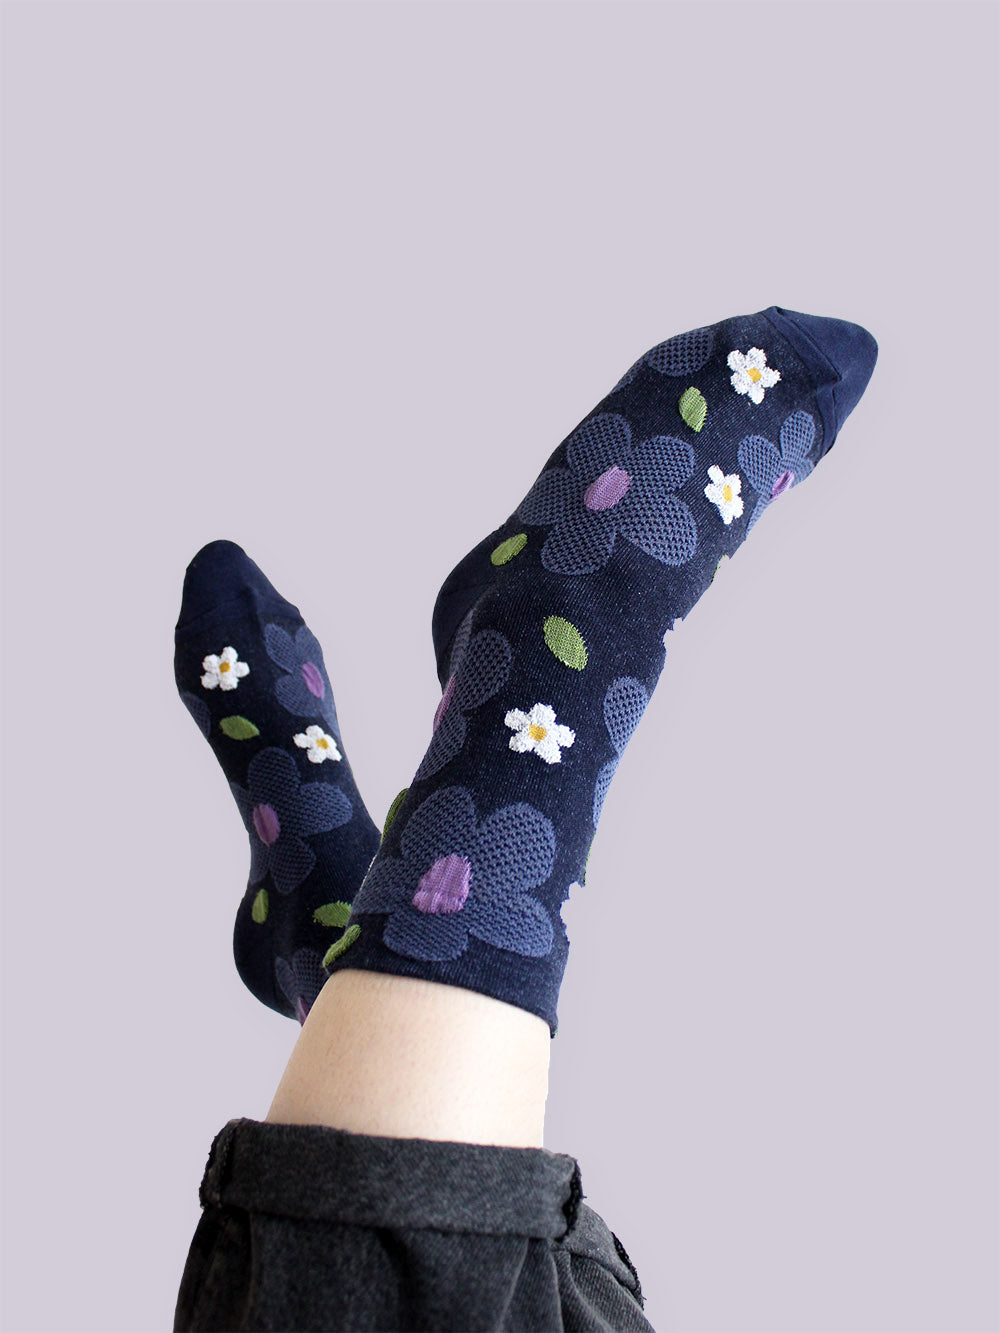 Tragebild von dunkelblauen Socken mit erhabener Struktur mit großen taubenblauen und weißen Blumen